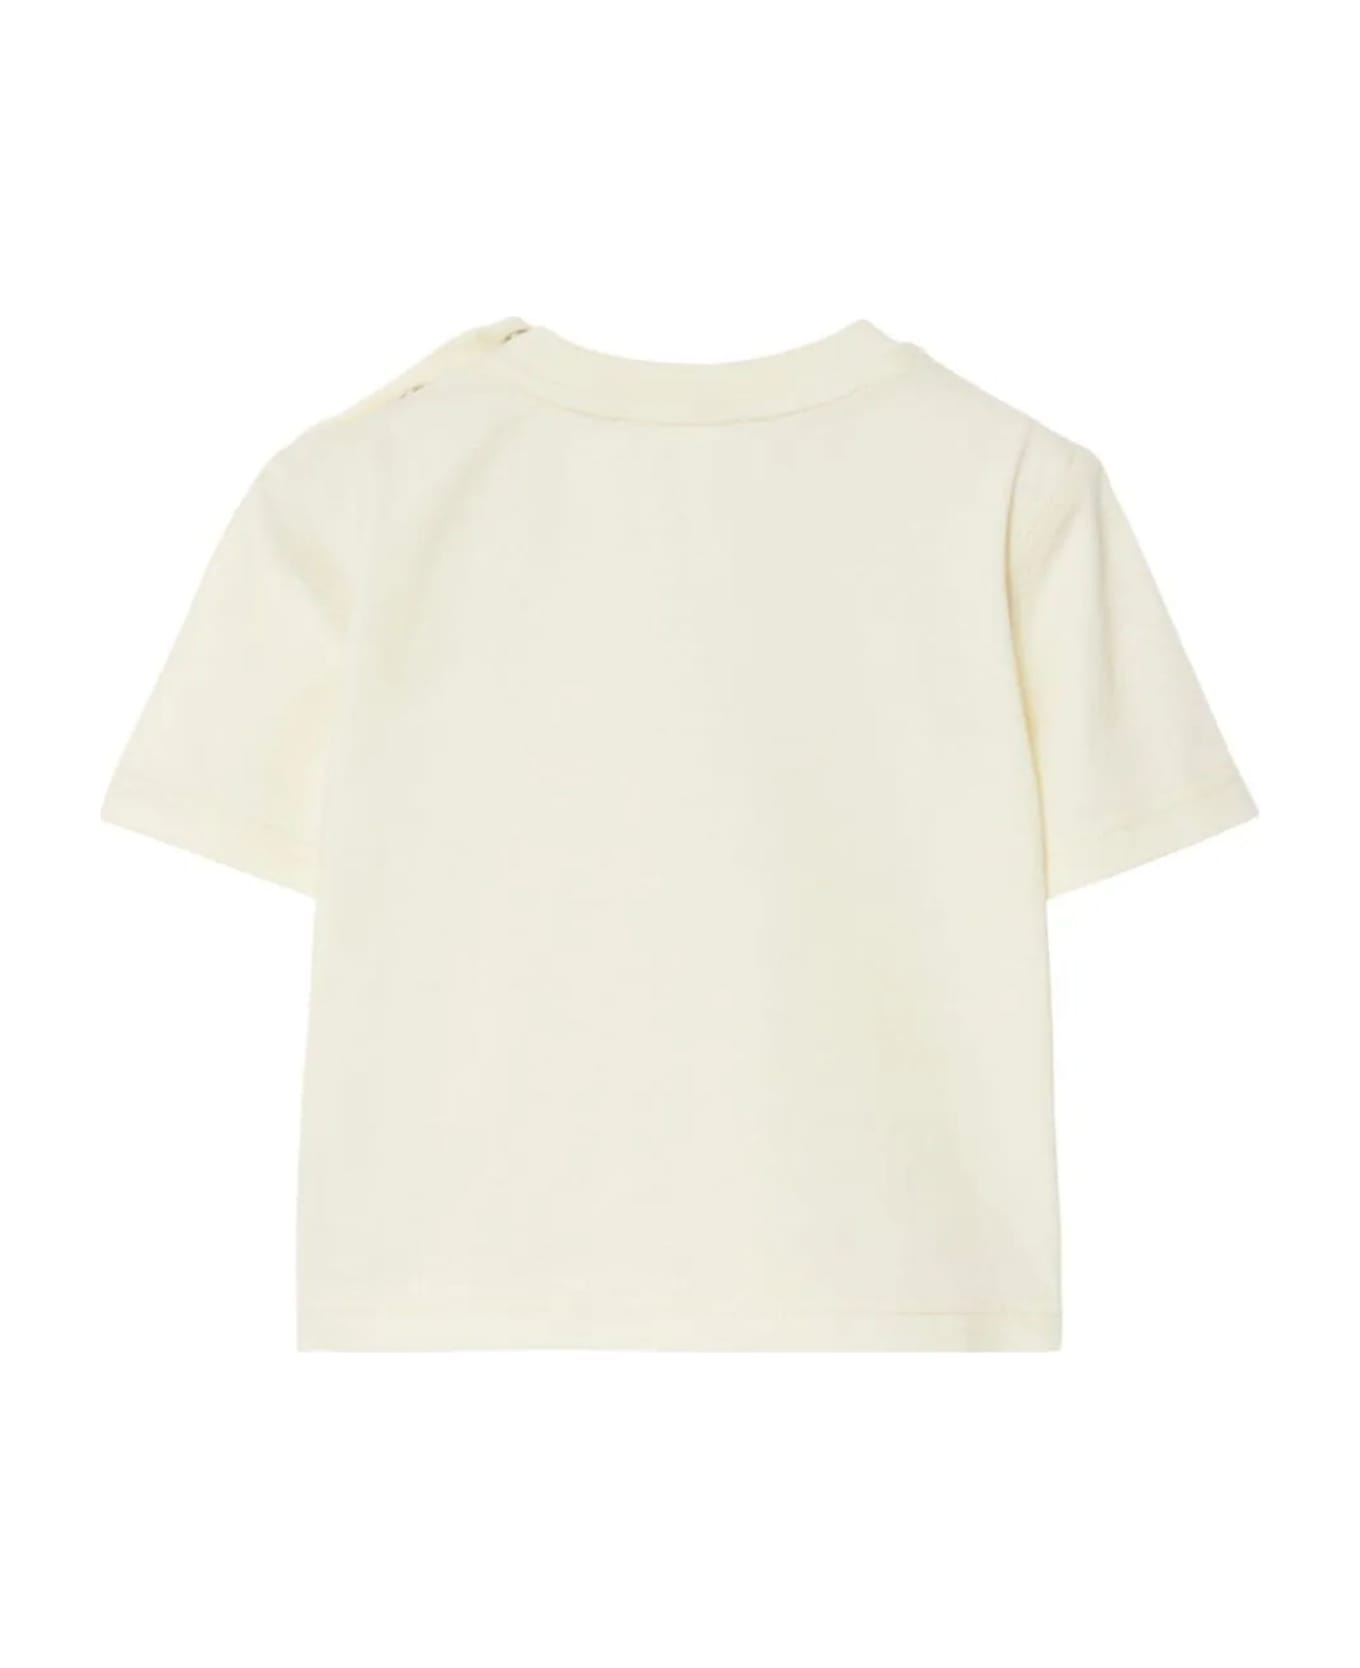 Burberry Light Beige Cotton T-shirt